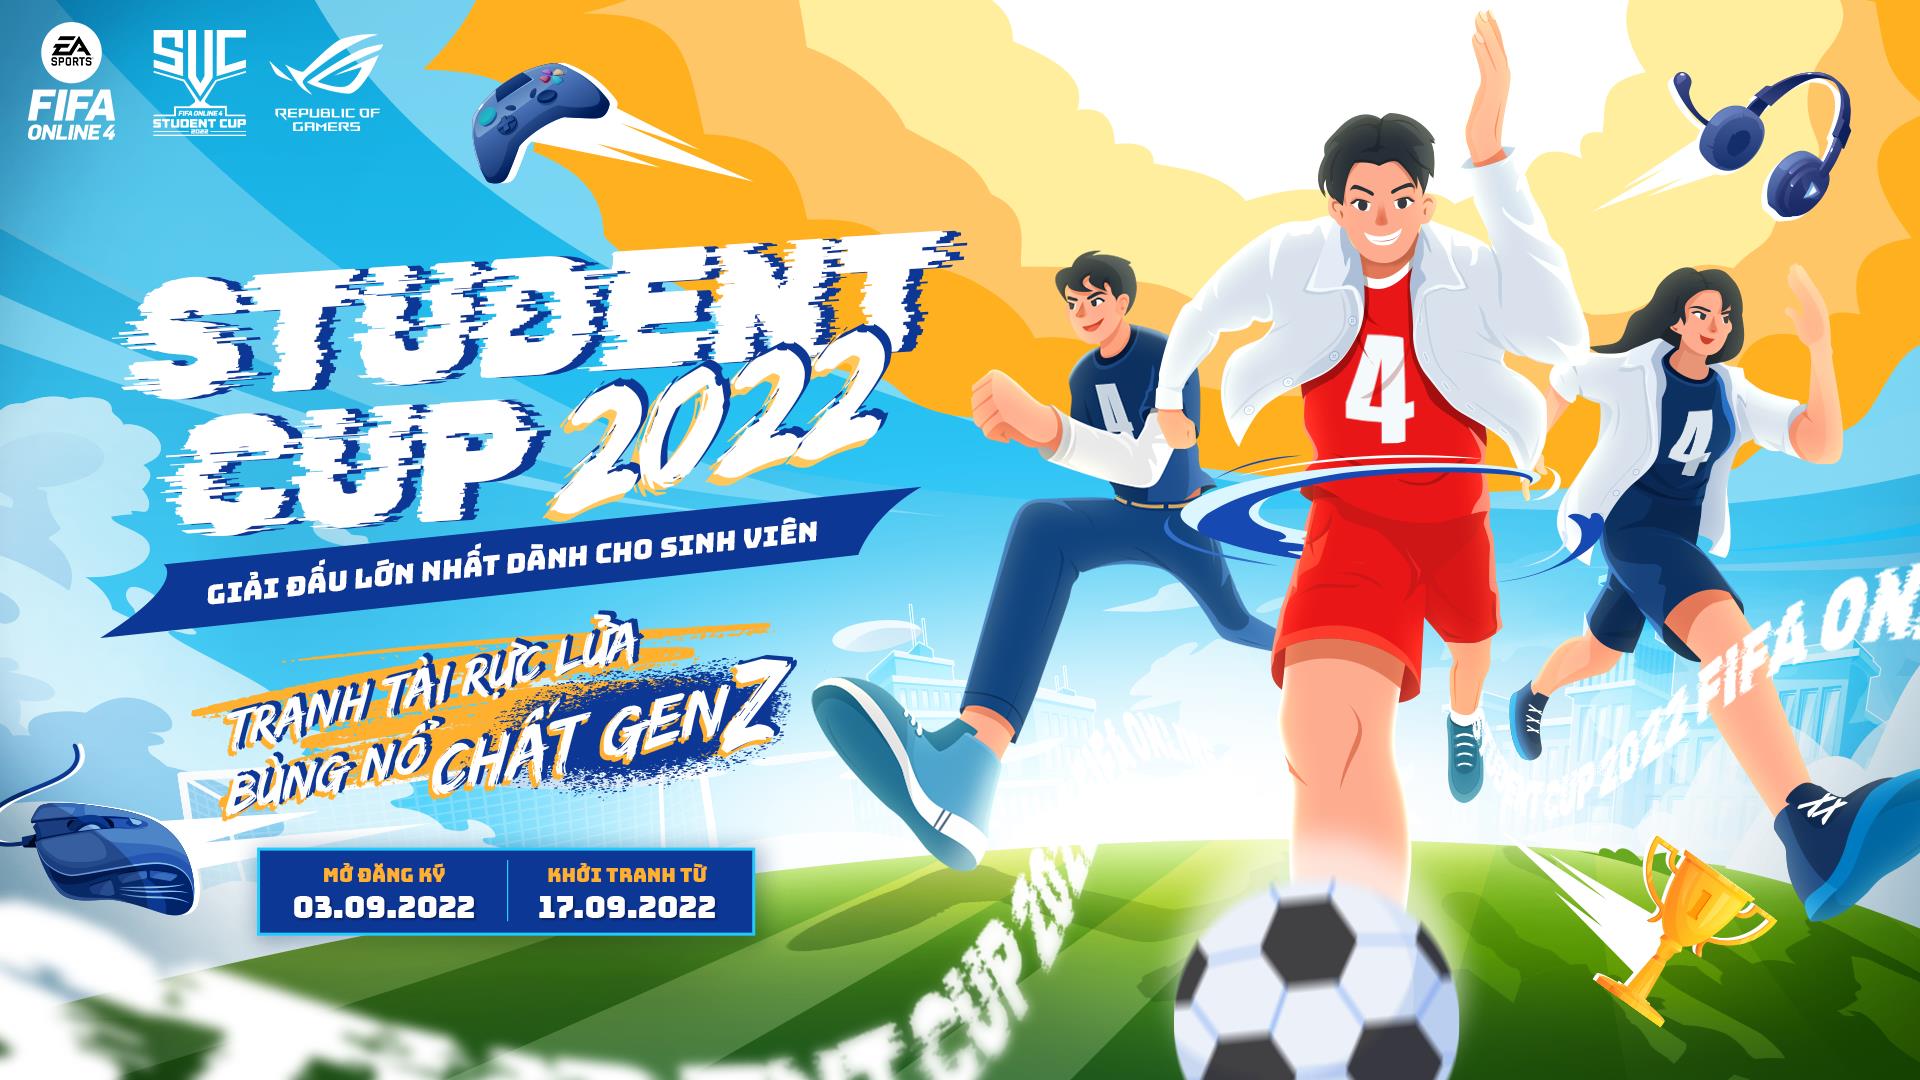 Giải đấu FIFA Online 4 lớn nhất dành cho sinh viên Việt Nam sắp khởi tranh - Ảnh 1.